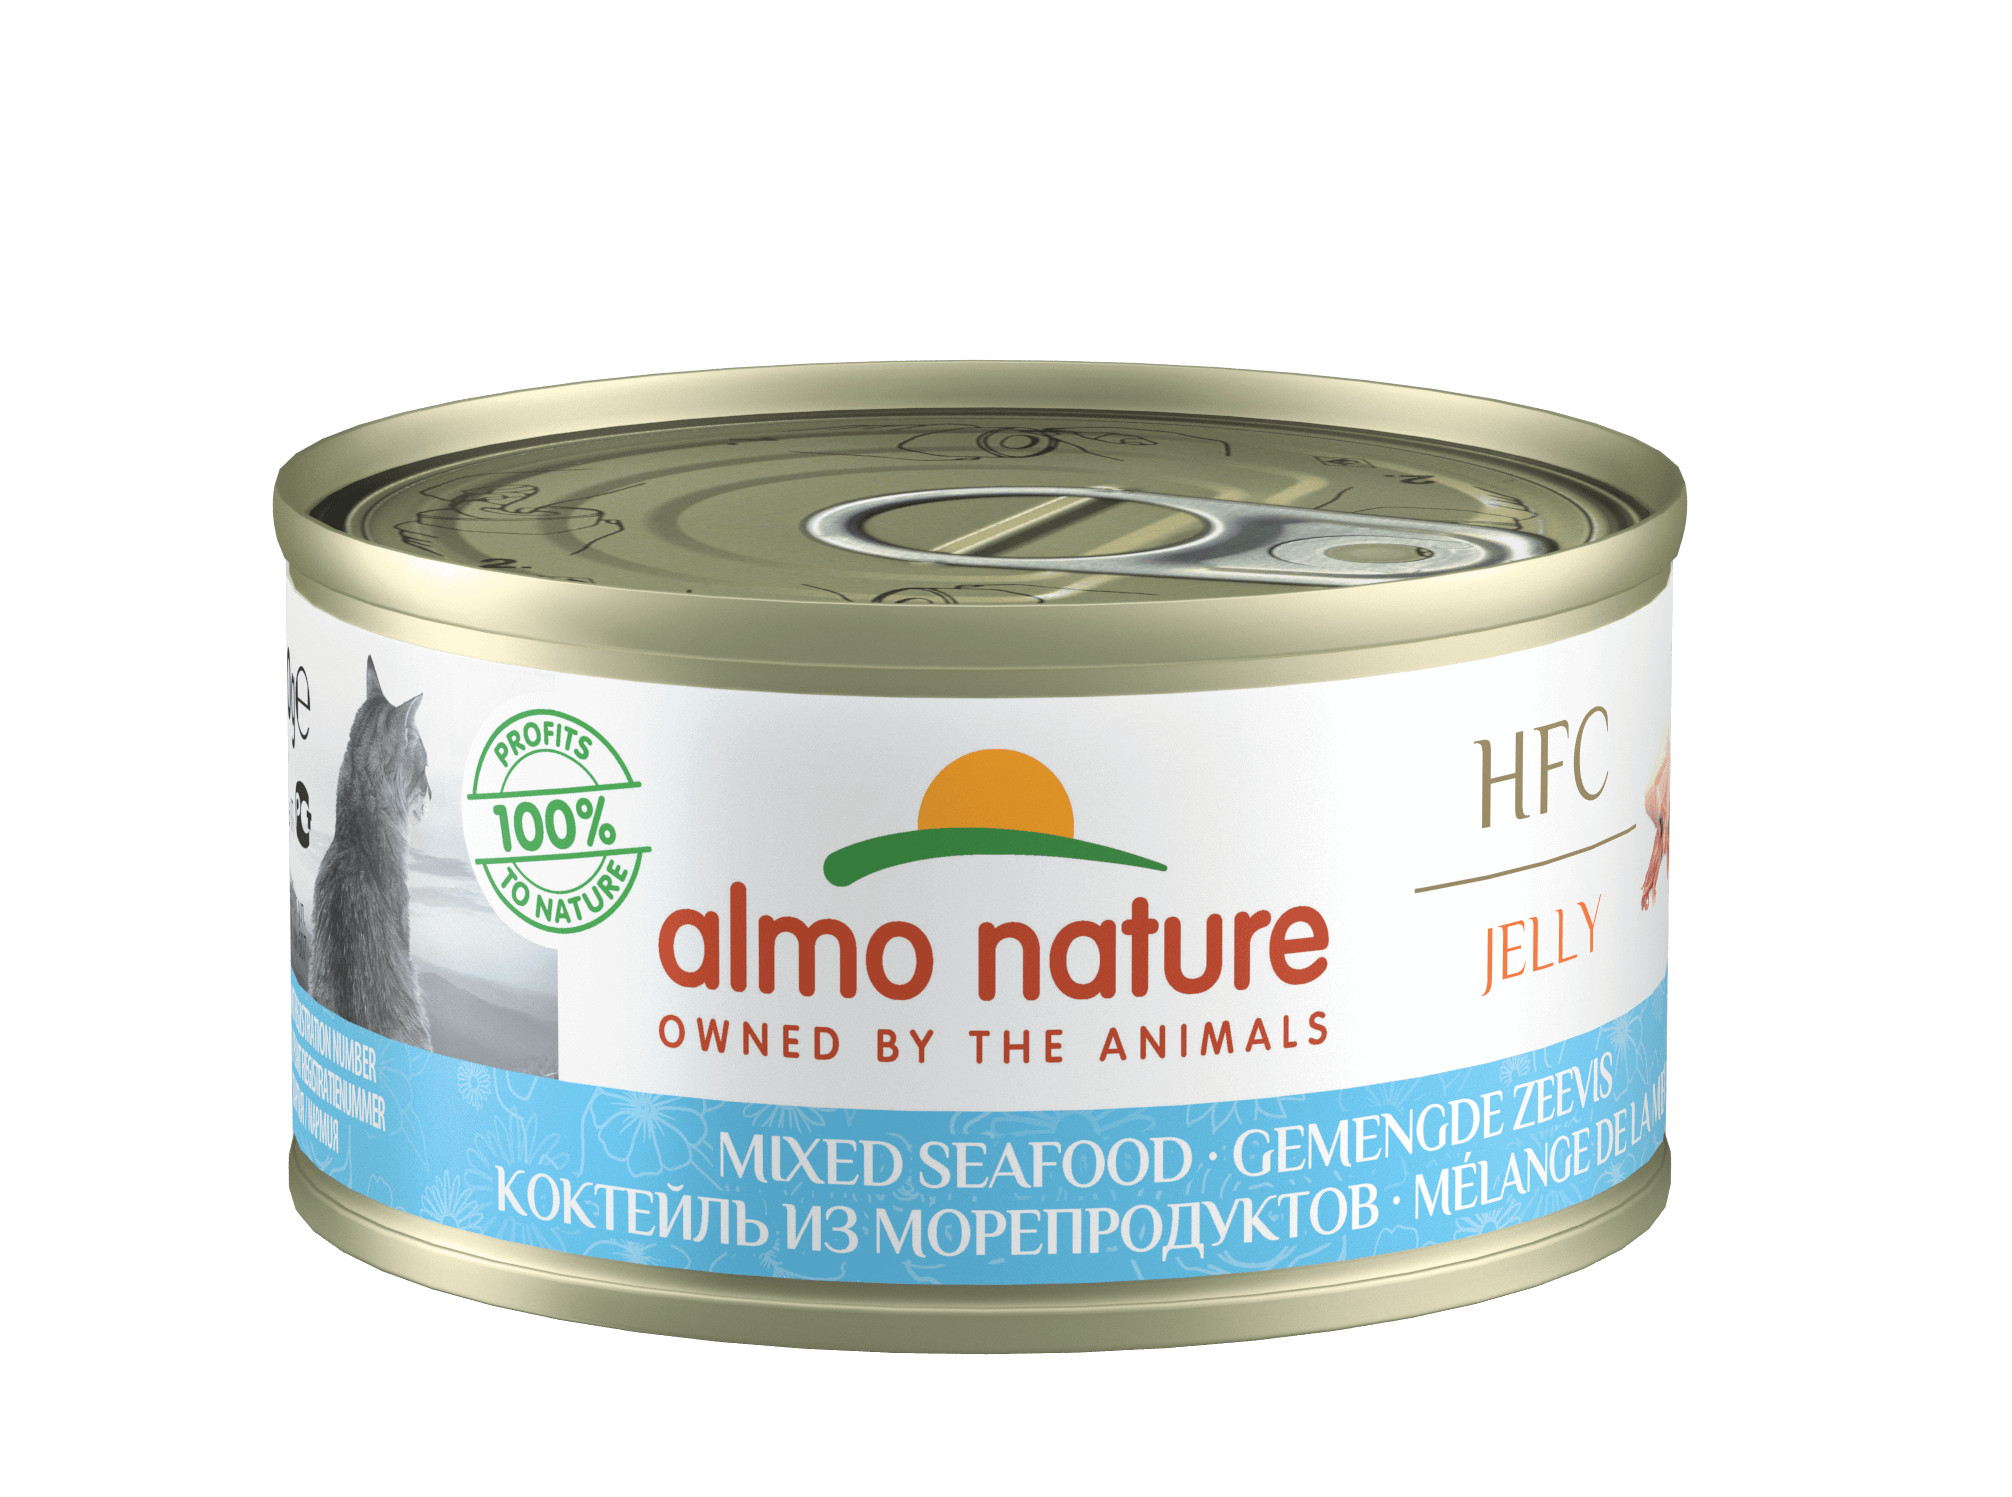 Almo Nature HFC Jelly Gemengde Zeevis 70 gram